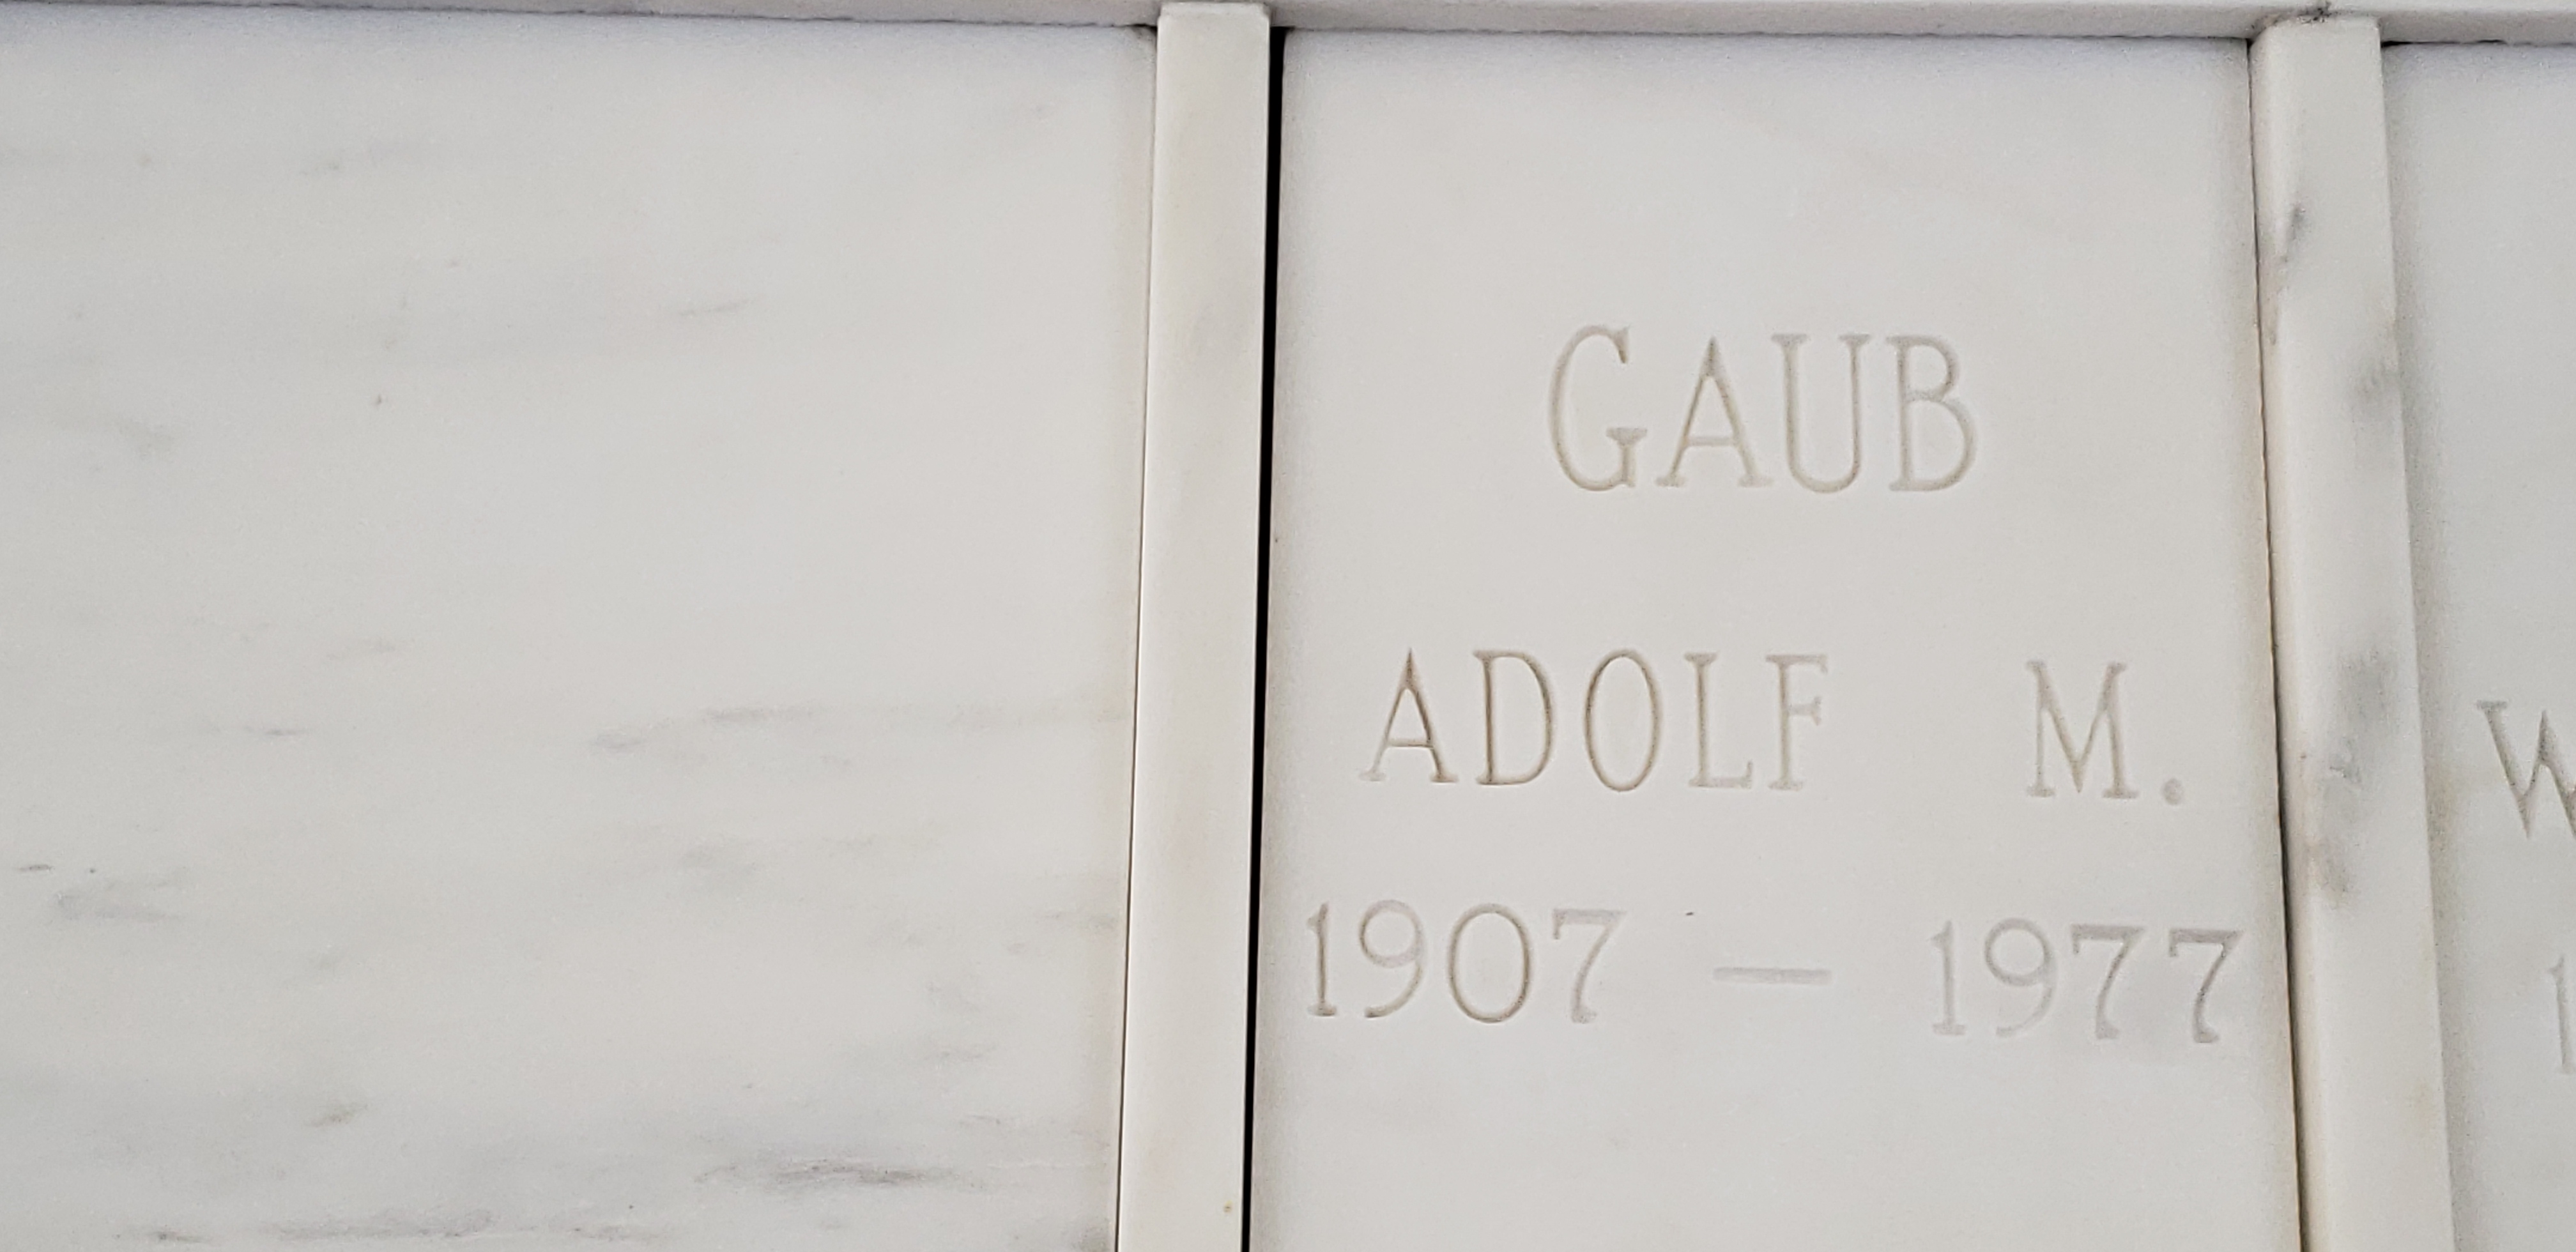 Adolf M Gaub